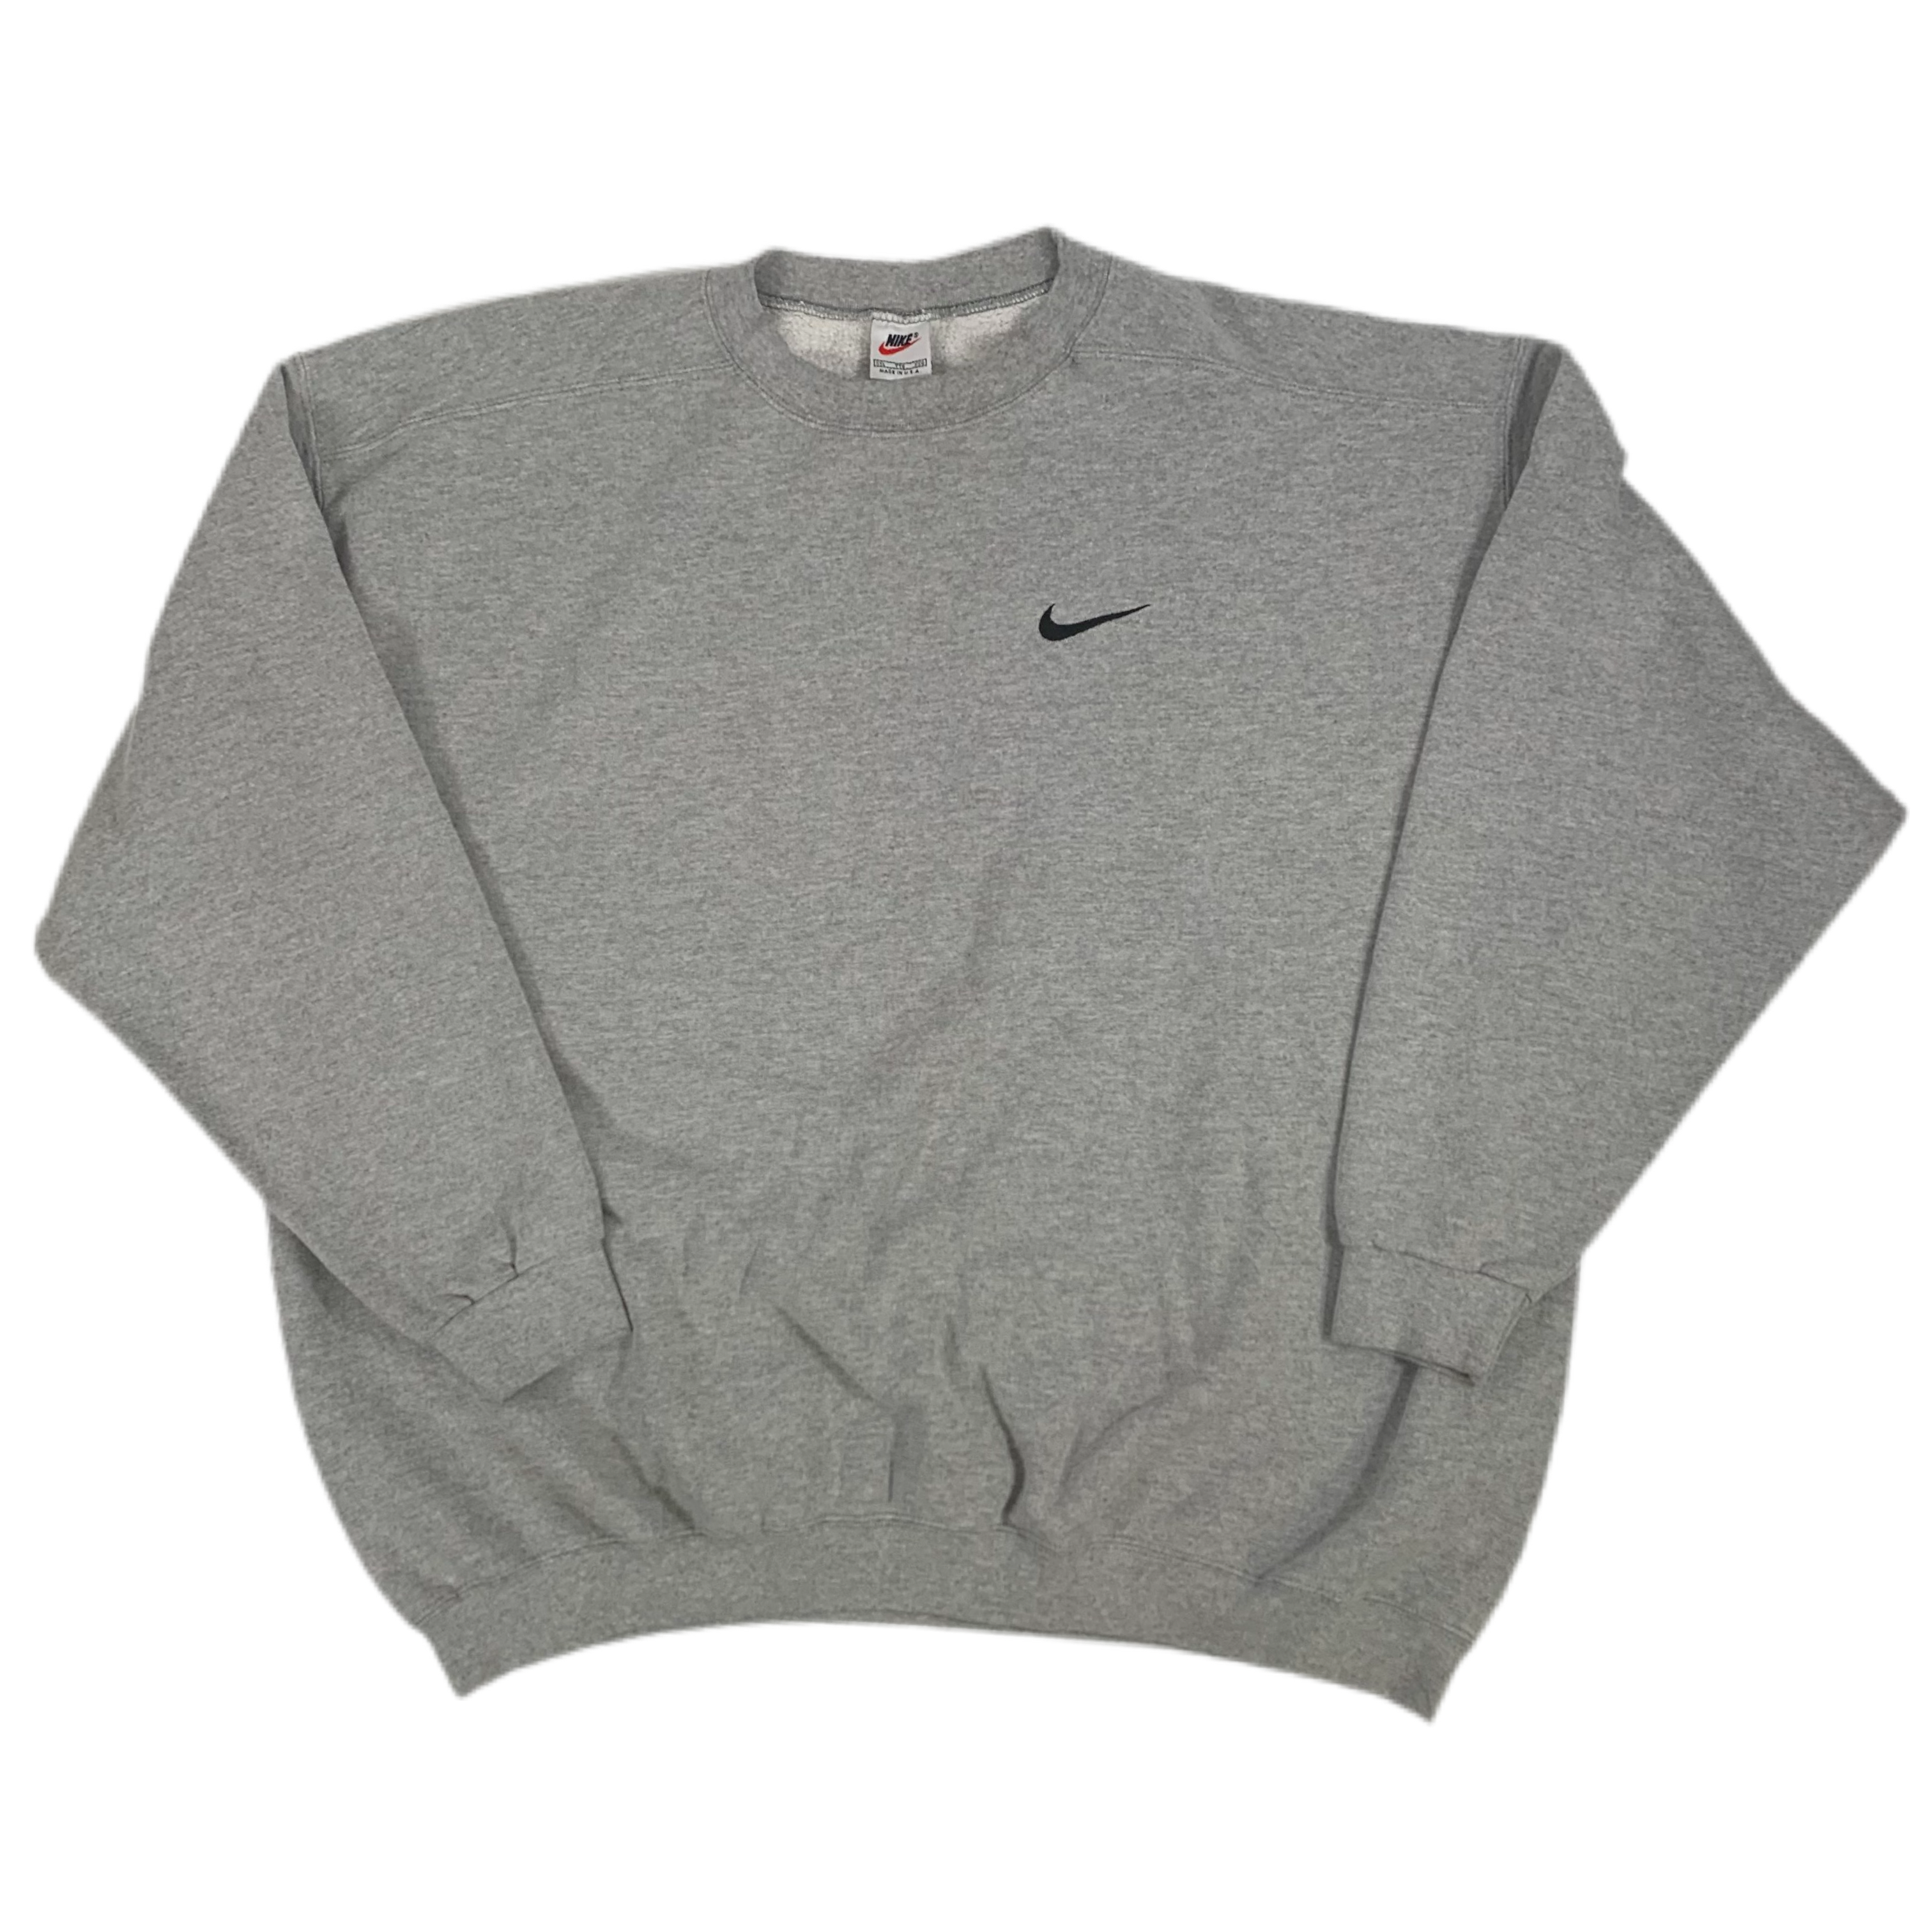 Vintage Nike "Mini Swoosh" Crewneck Sweatshirt jointcustodydc